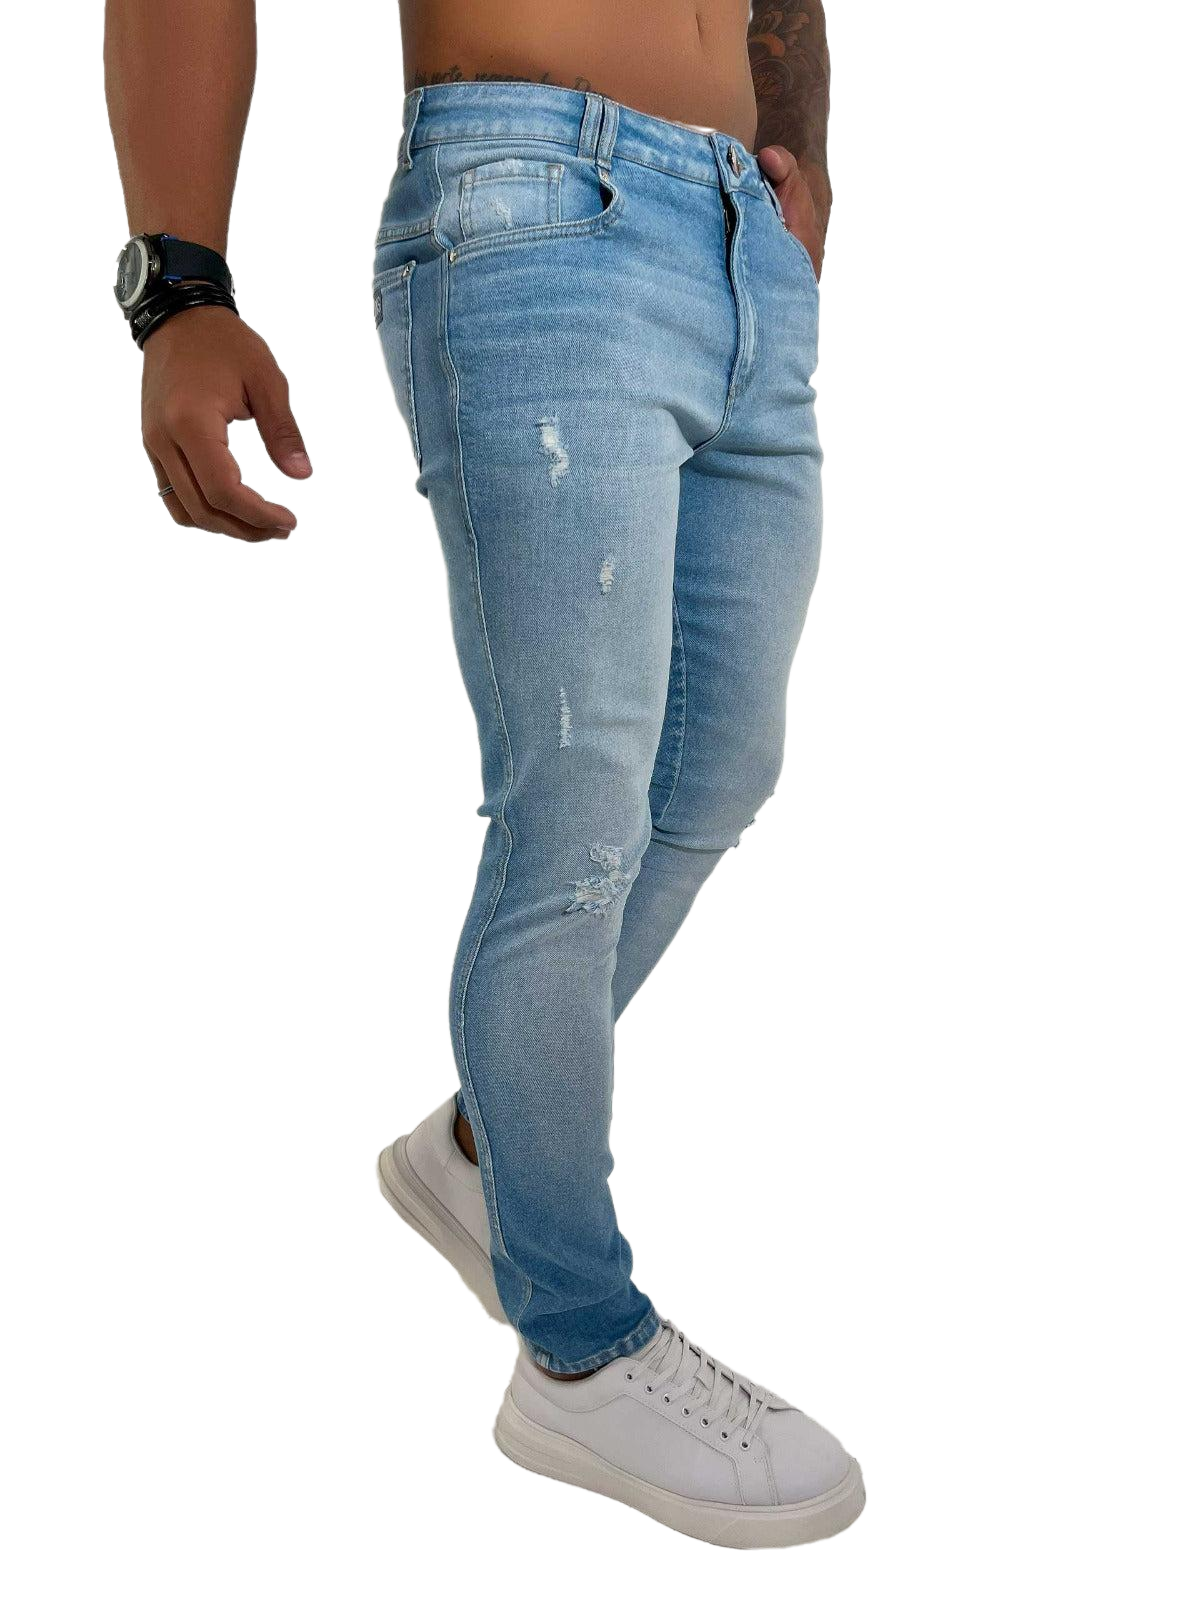 Pit Bull Jeans Men's Jeans Pants 80705